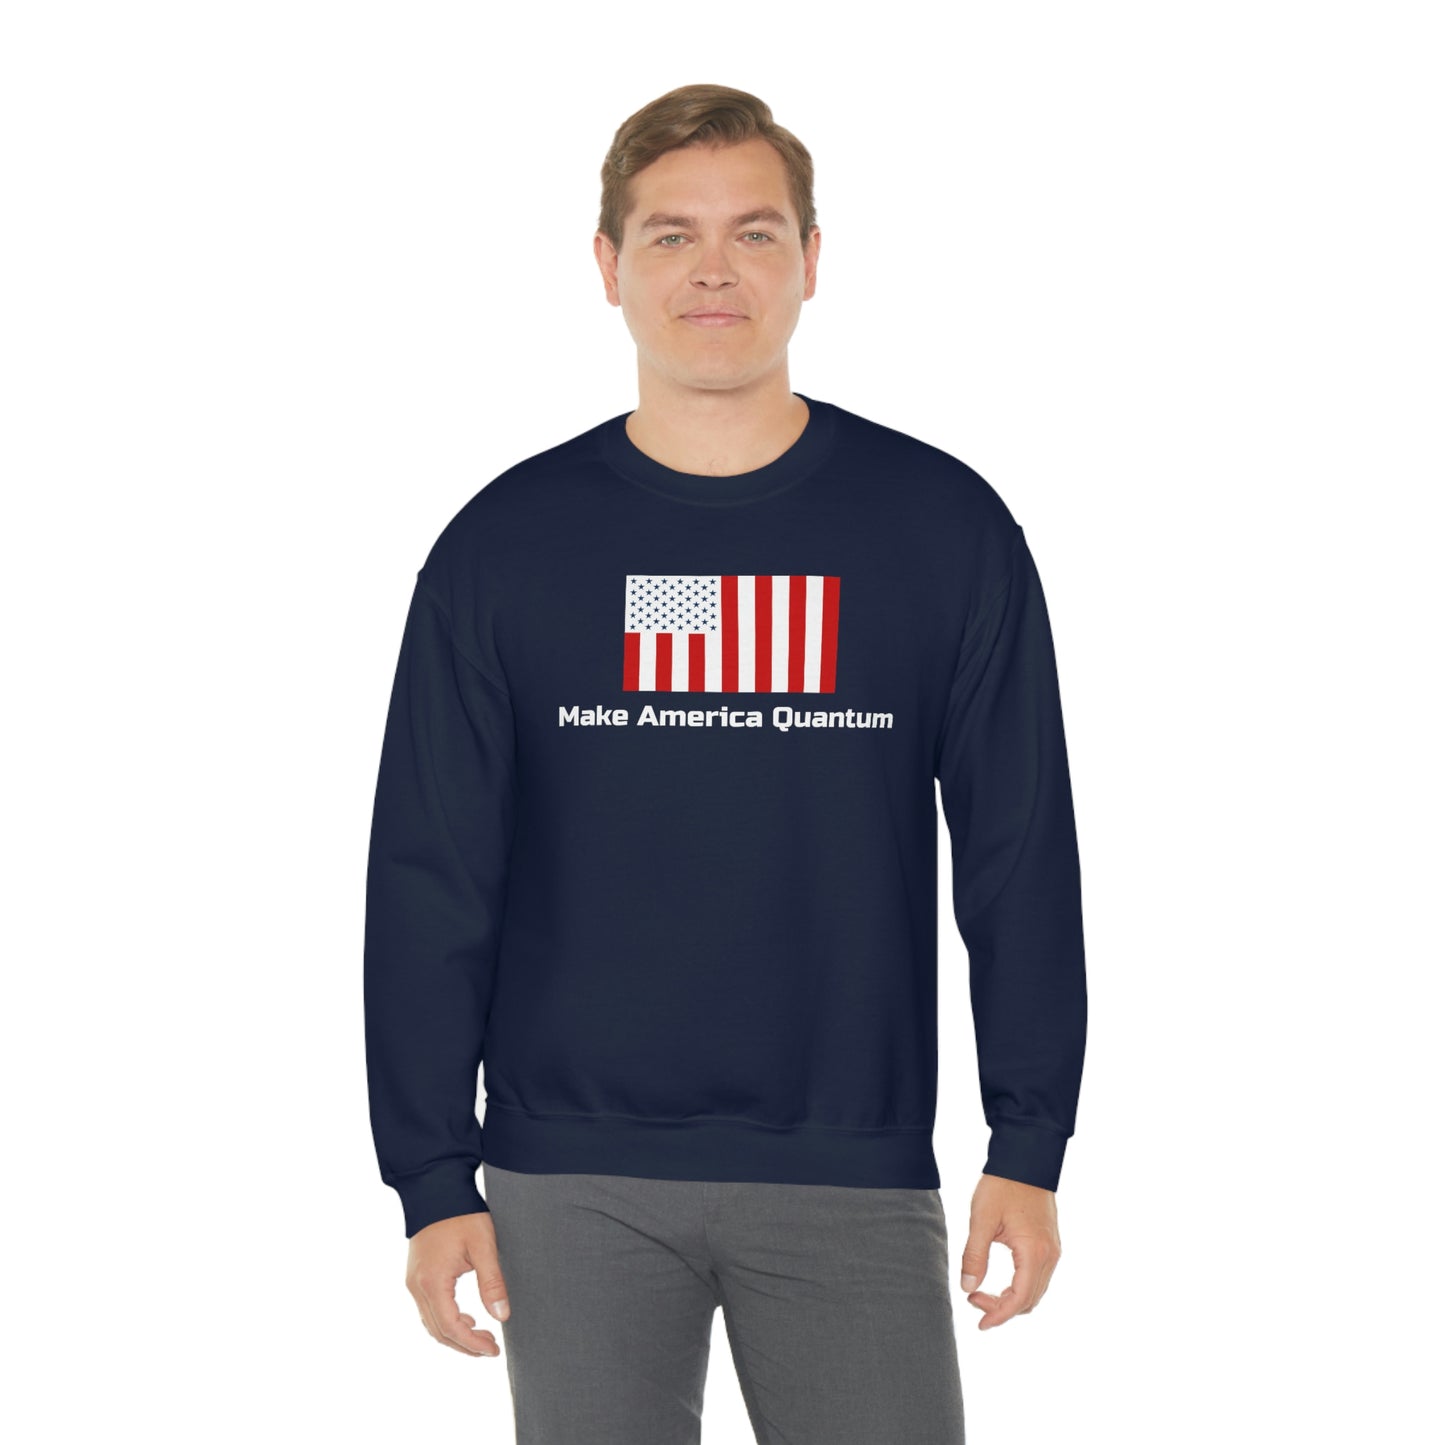 M.A.Q. Adult Sweatshirt